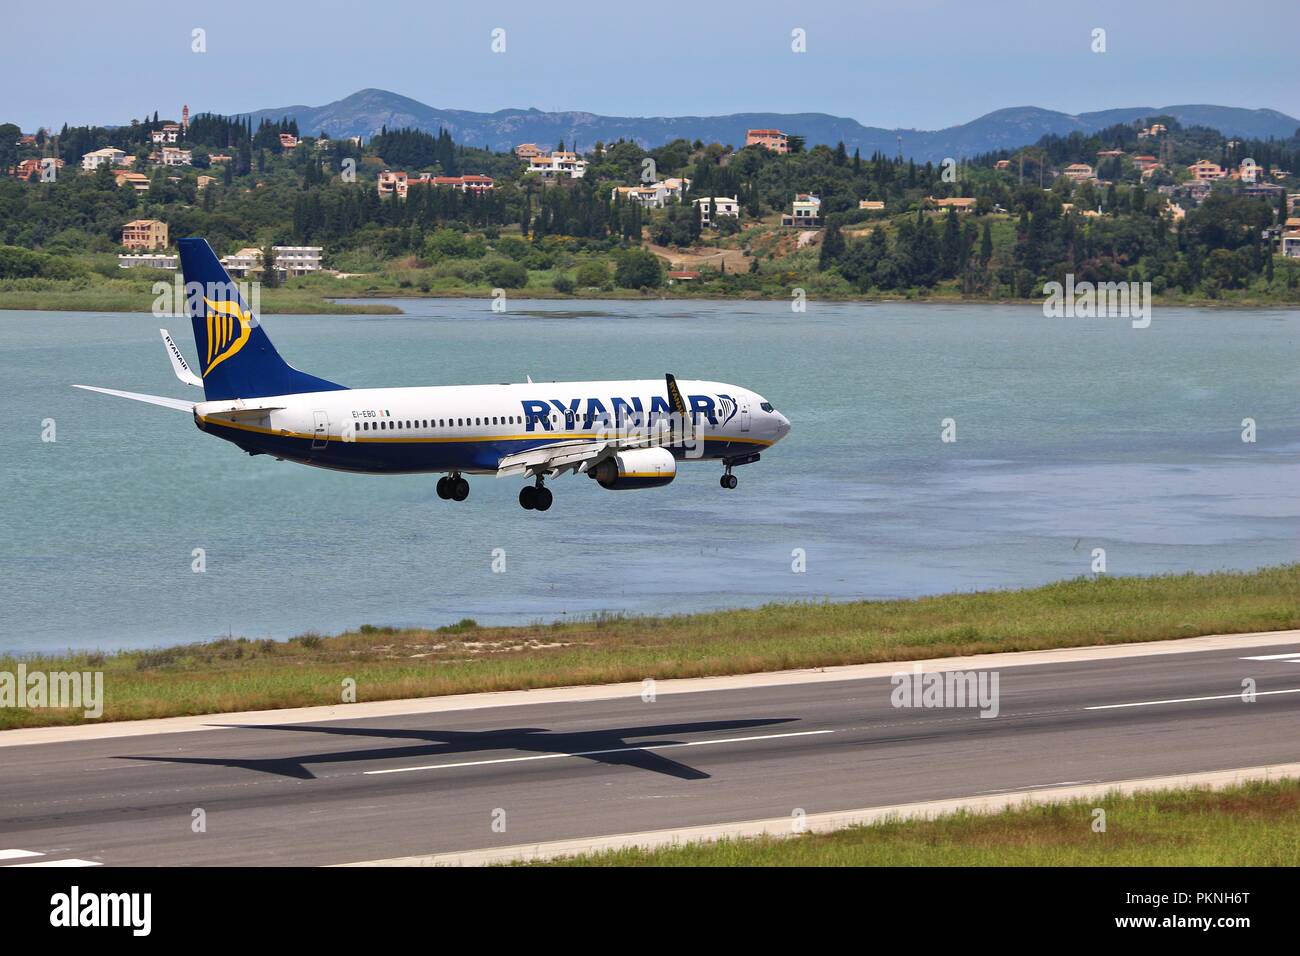 Corfù, Grecia - 5 giugno 2016: Ryanair Boeing 737-800 arriva all'Aeroporto Internazionale di Corfu', Grecia. Ryanair è uno dei maggiori operatori di Boeing 737 Foto Stock